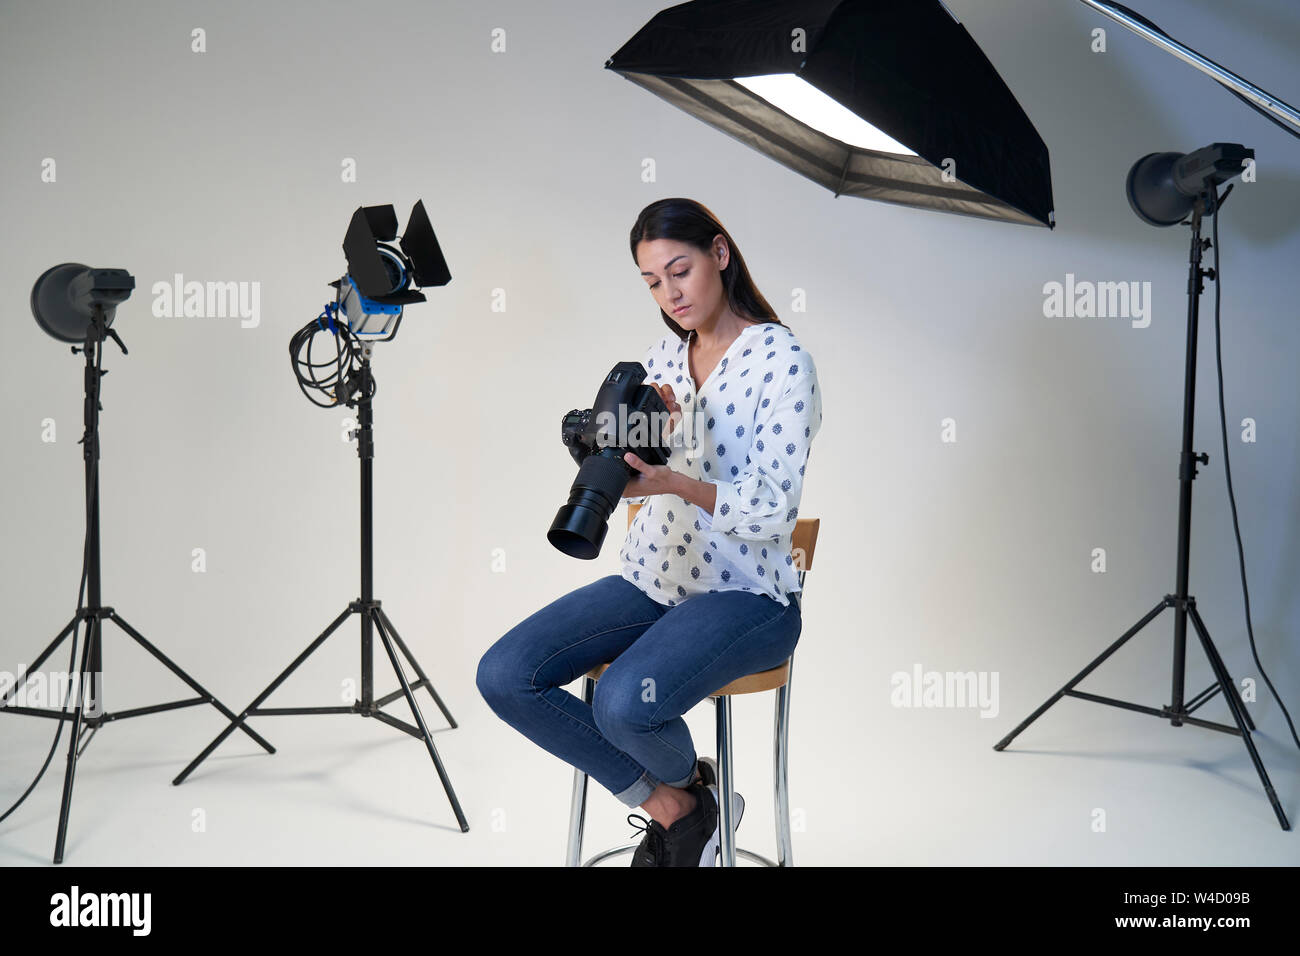 Femme photographe en studio pour la séance photo avec l'appareil photo et l'équipement d'éclairage Banque D'Images